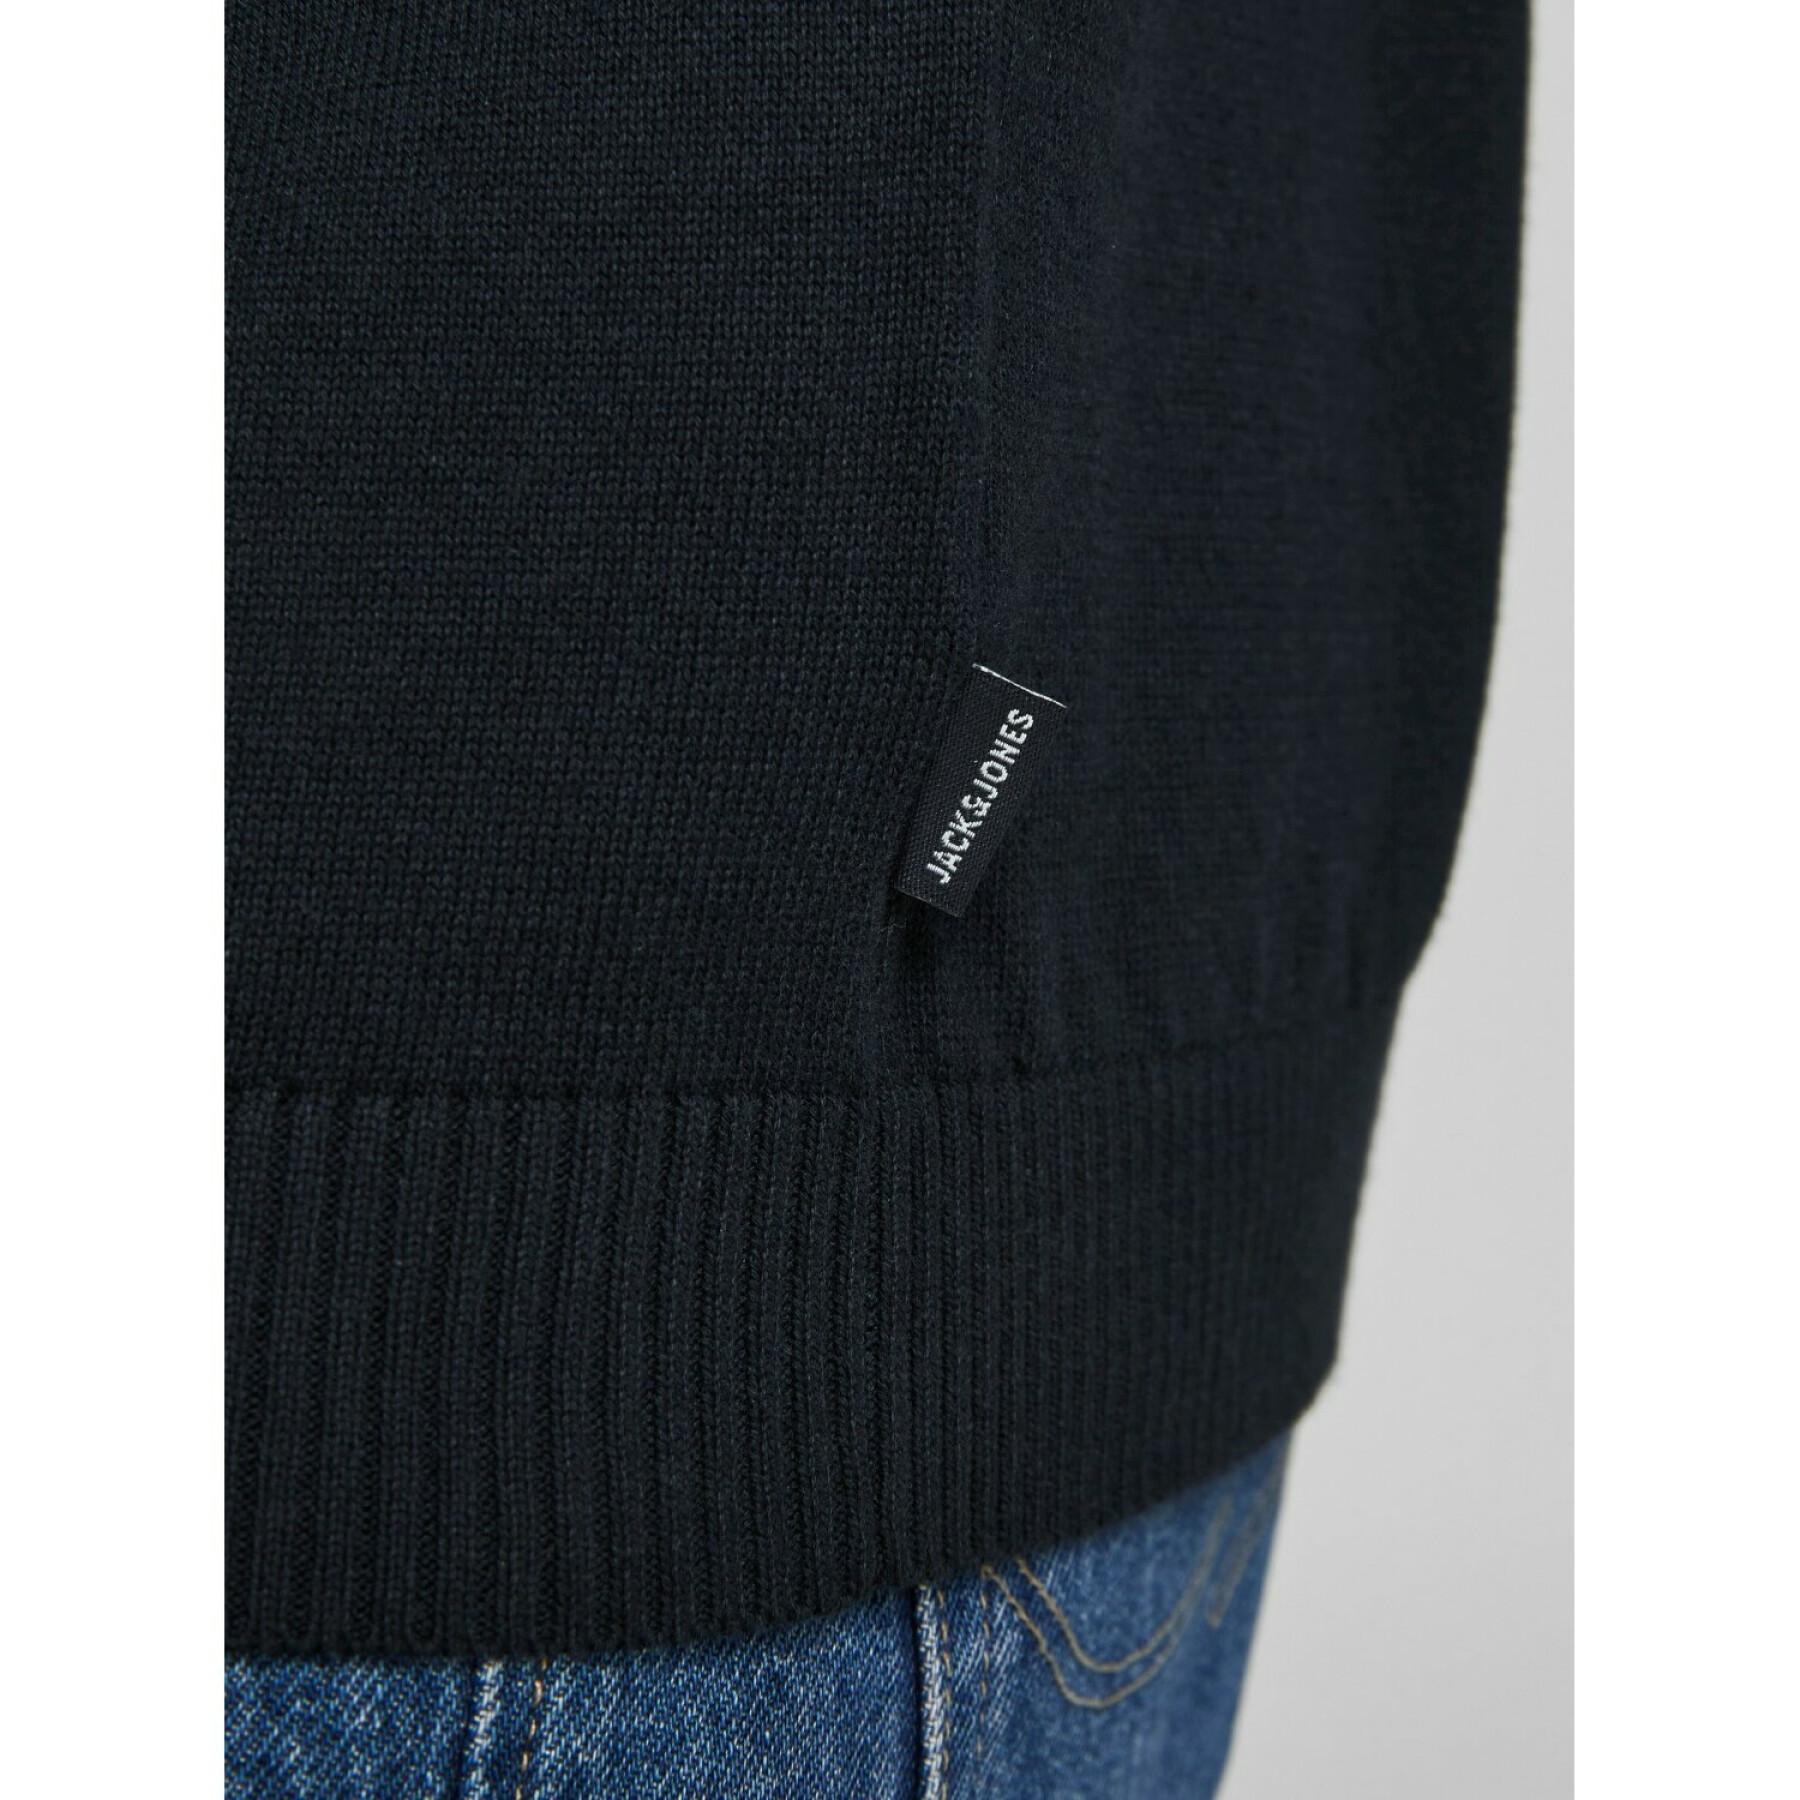 1/2 zip pullover Jack & Jones Basic